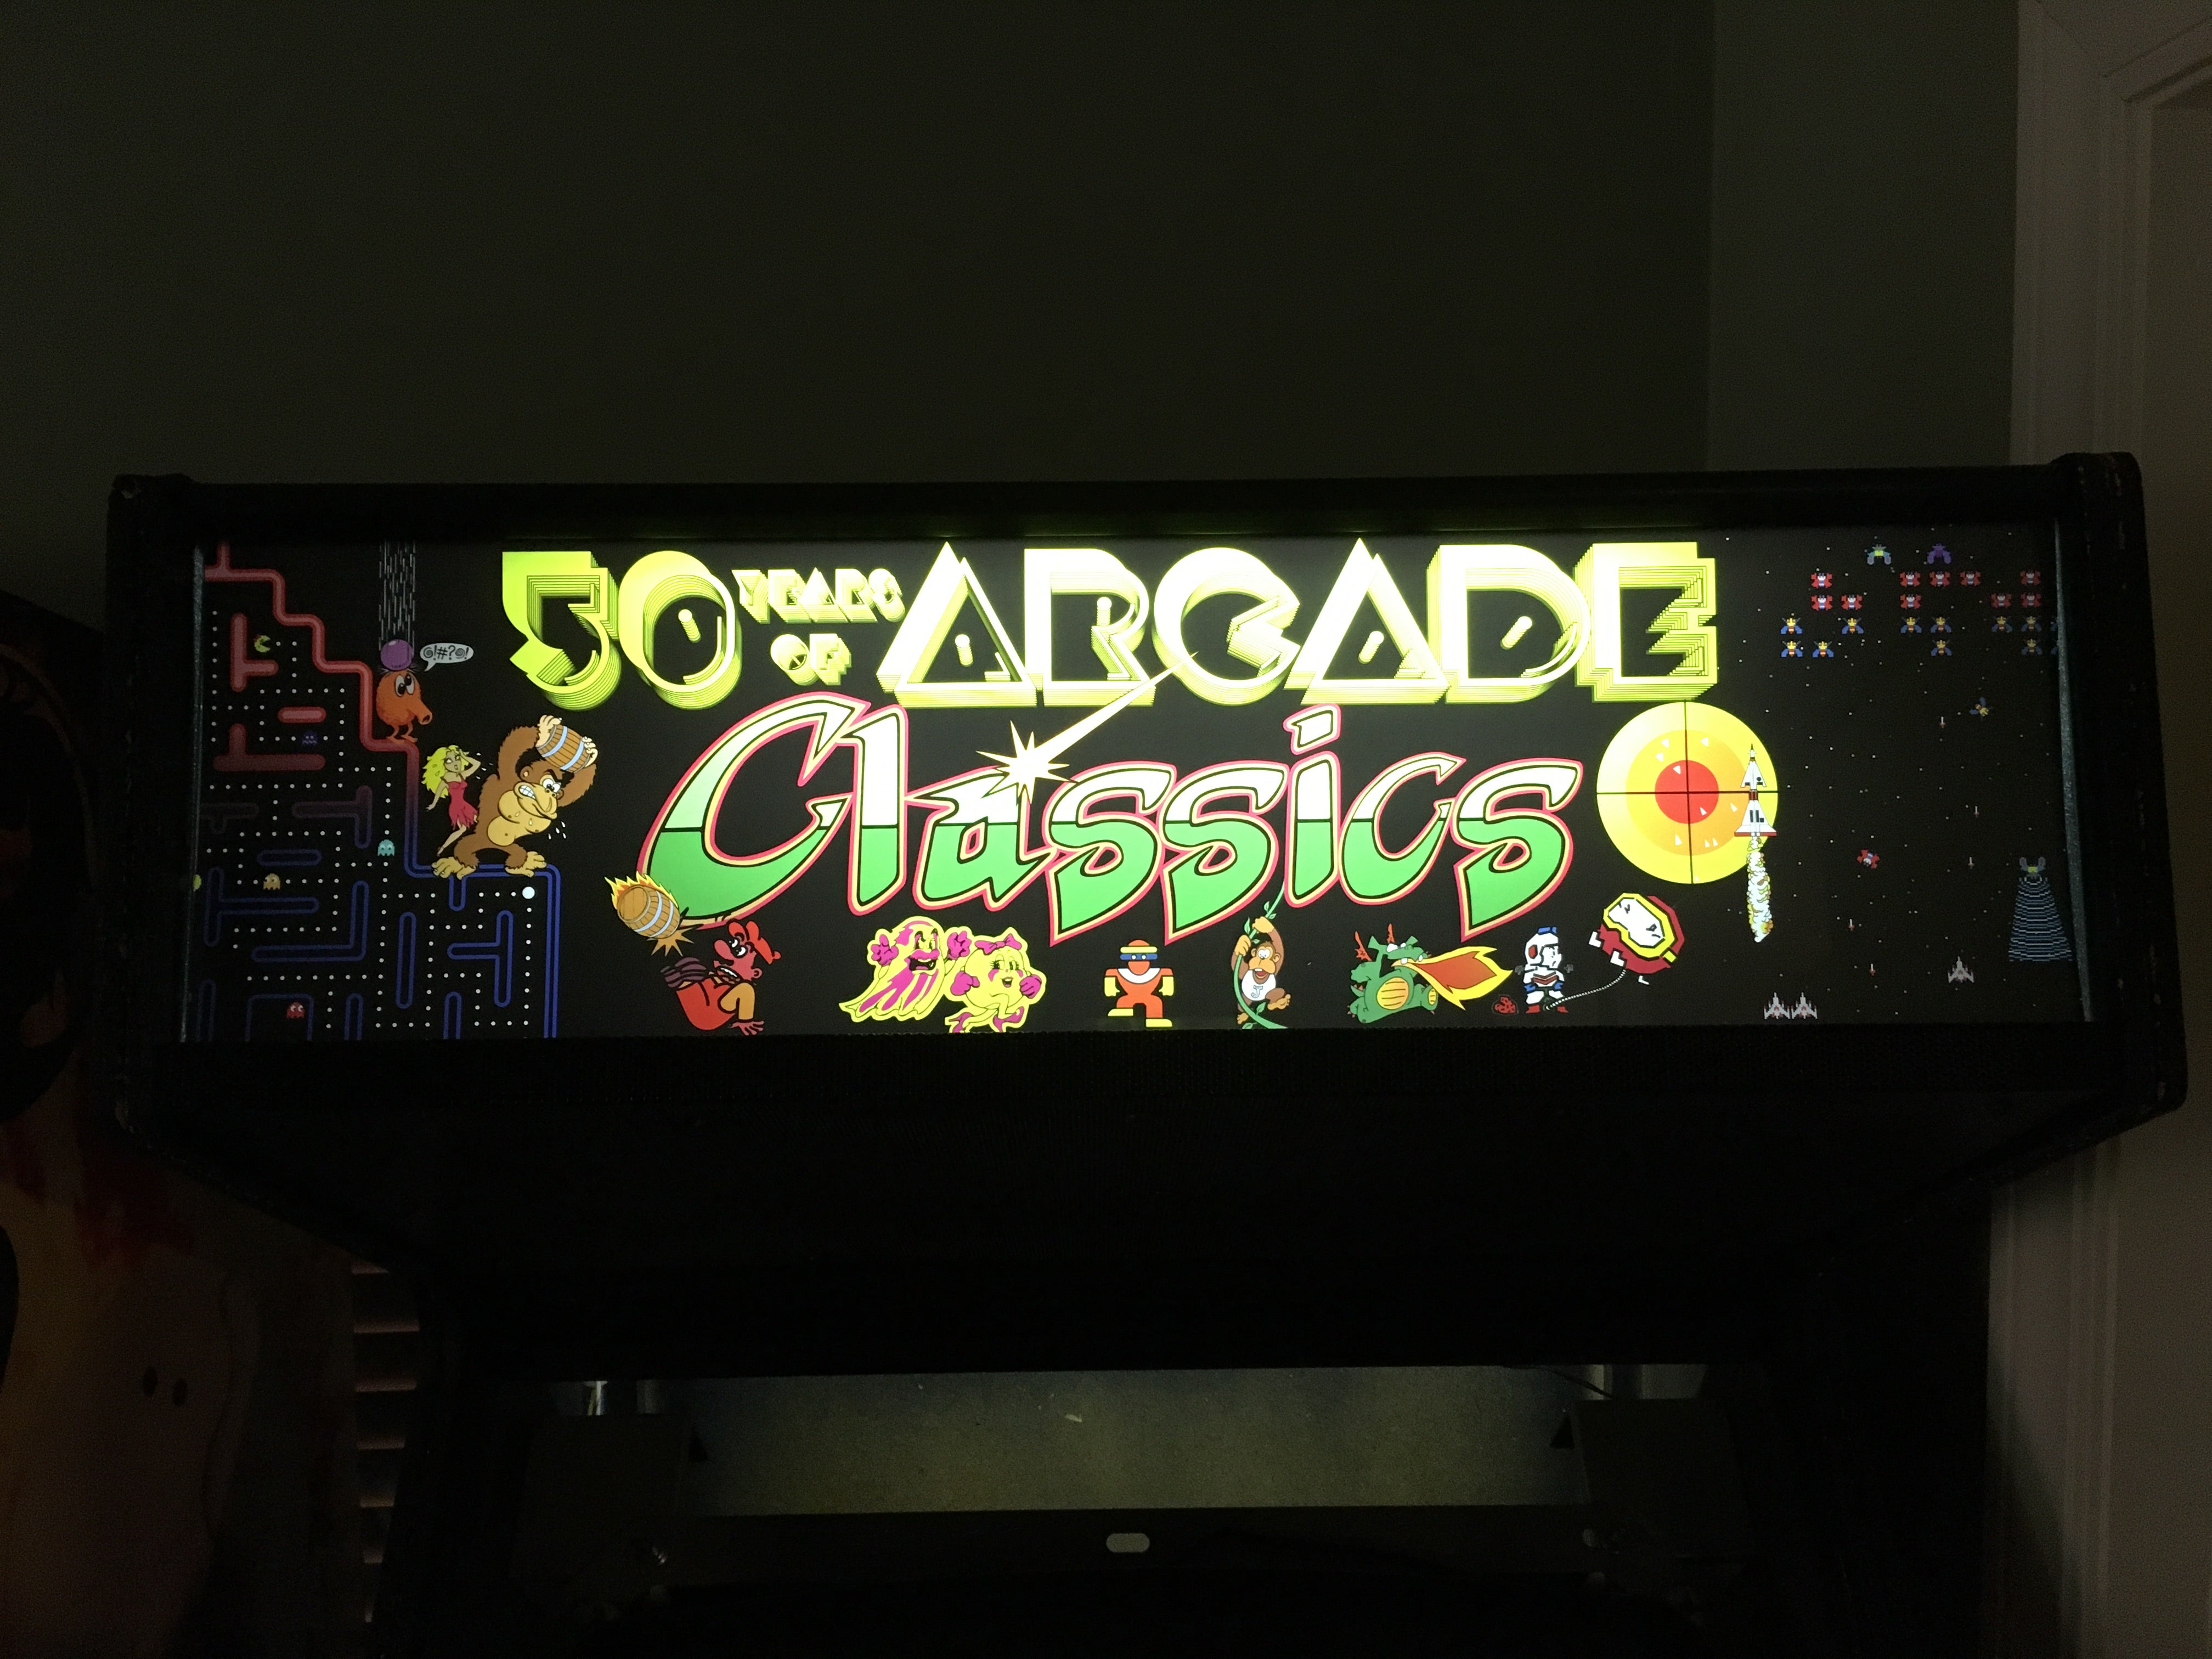 Carpa de clásicos arcade